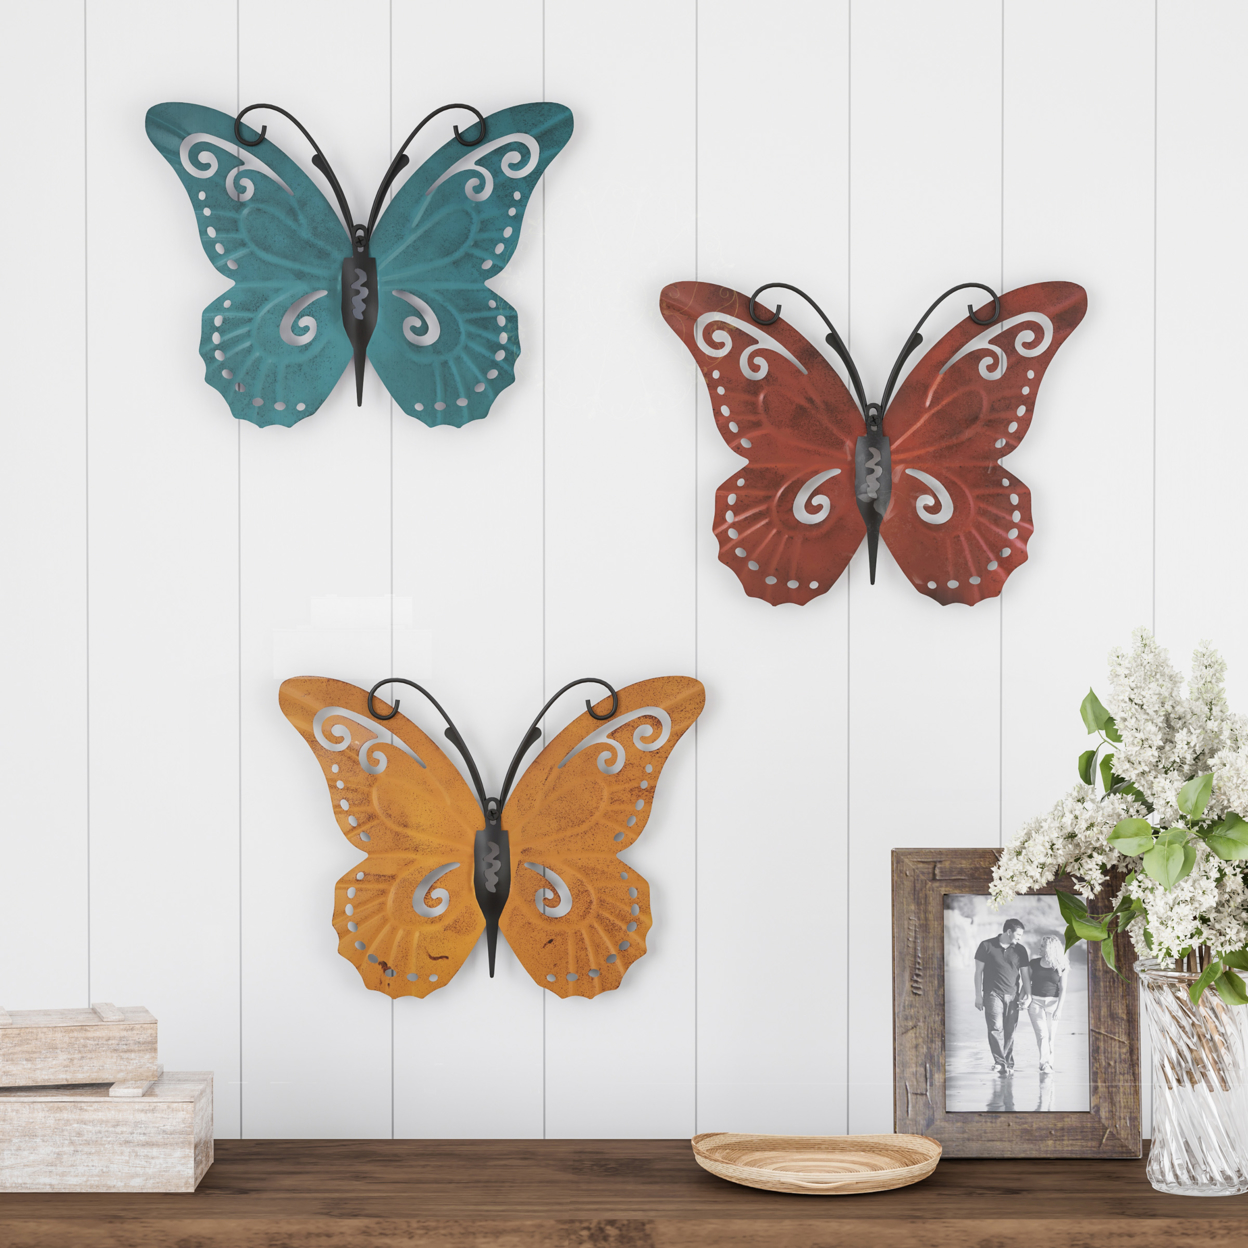 Butterfly Metal Wall Art 3 Piece Set- Hand Painted Decorative 3D Nature Butterflies